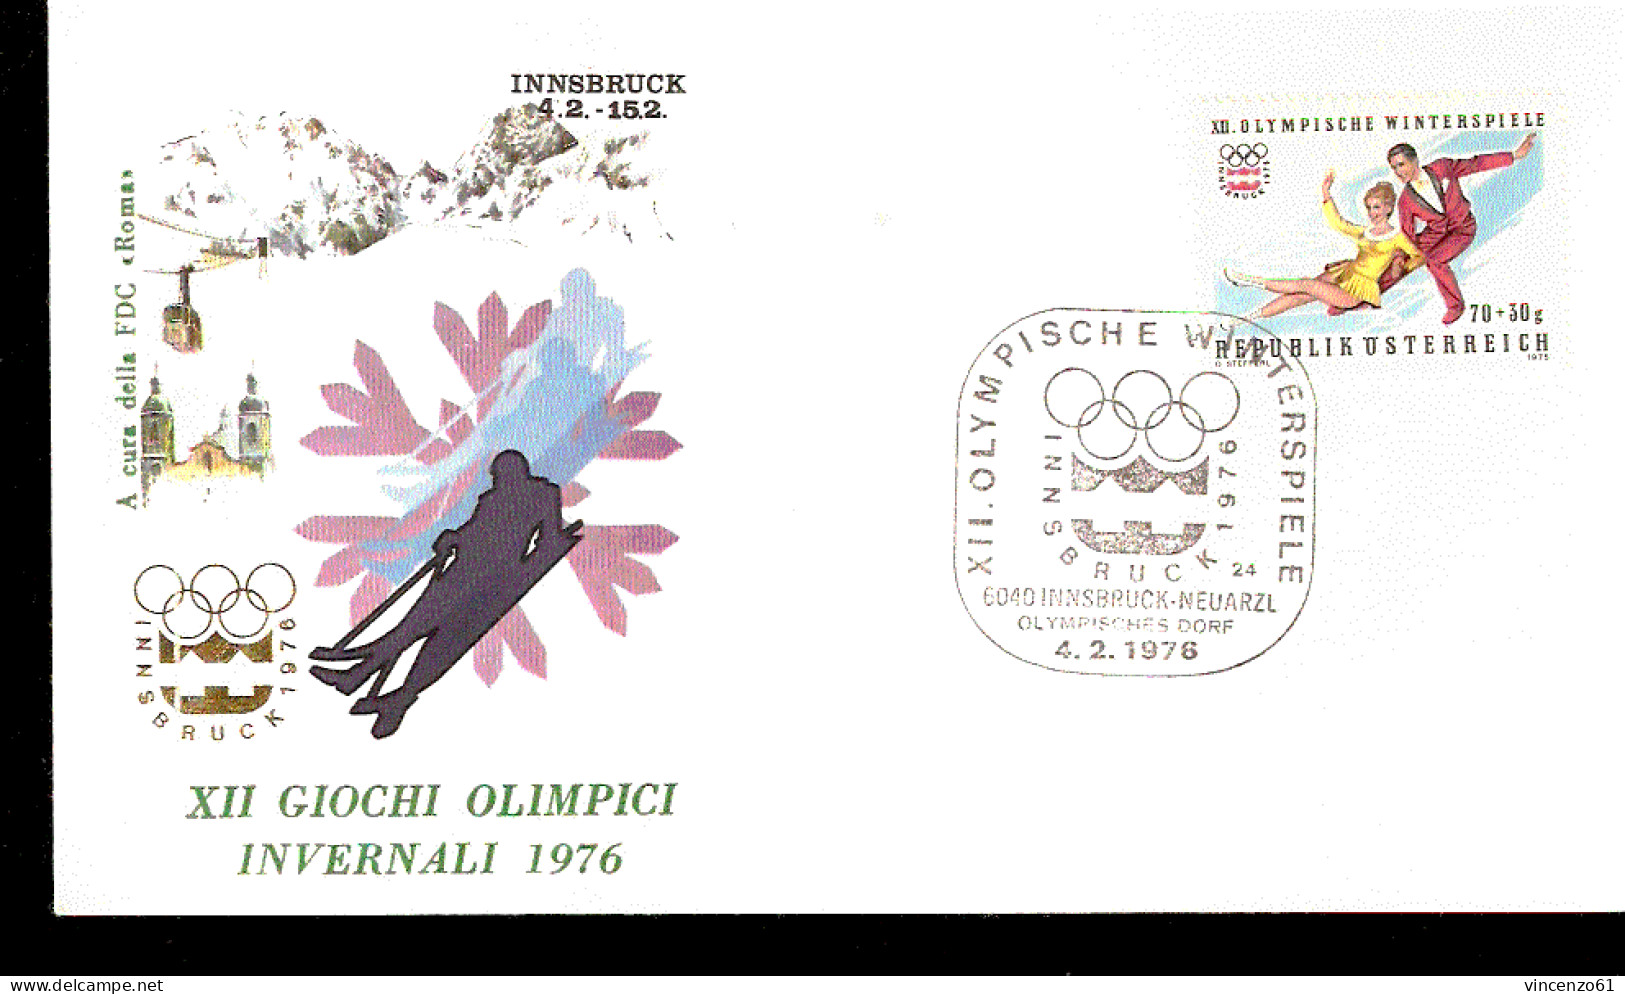 XII GIOCHI OLIMPICI DI INNSBRUCK 1976 SCI PATTINAGGIO ARTISTICO - Hiver 1976: Innsbruck